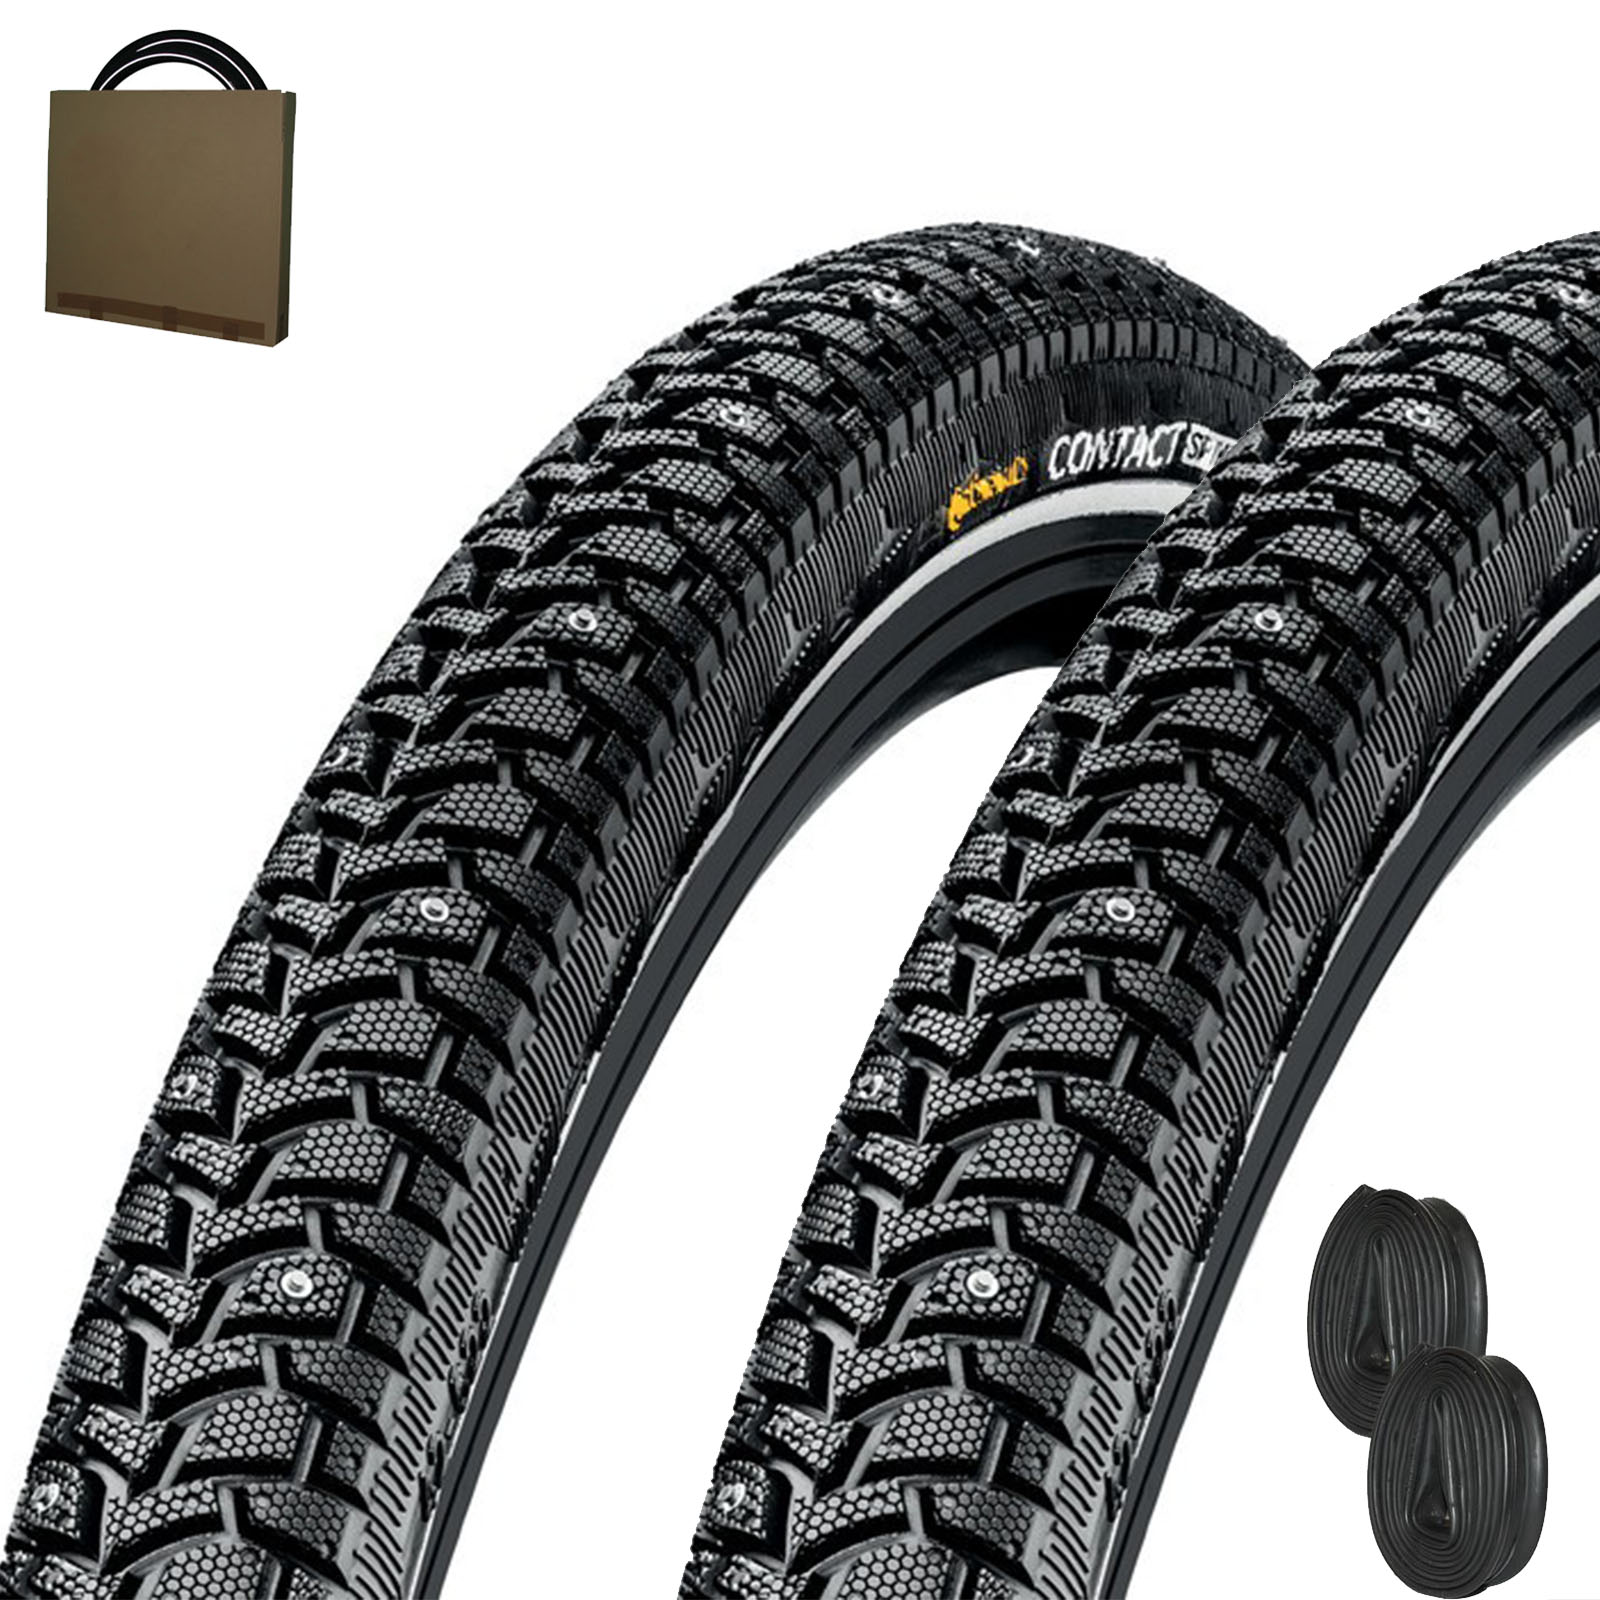 2x Continental Reifen Contact Spike 28x1.60 | 42-622 schwarz Reflex 120 Spikes ohne Schlauch